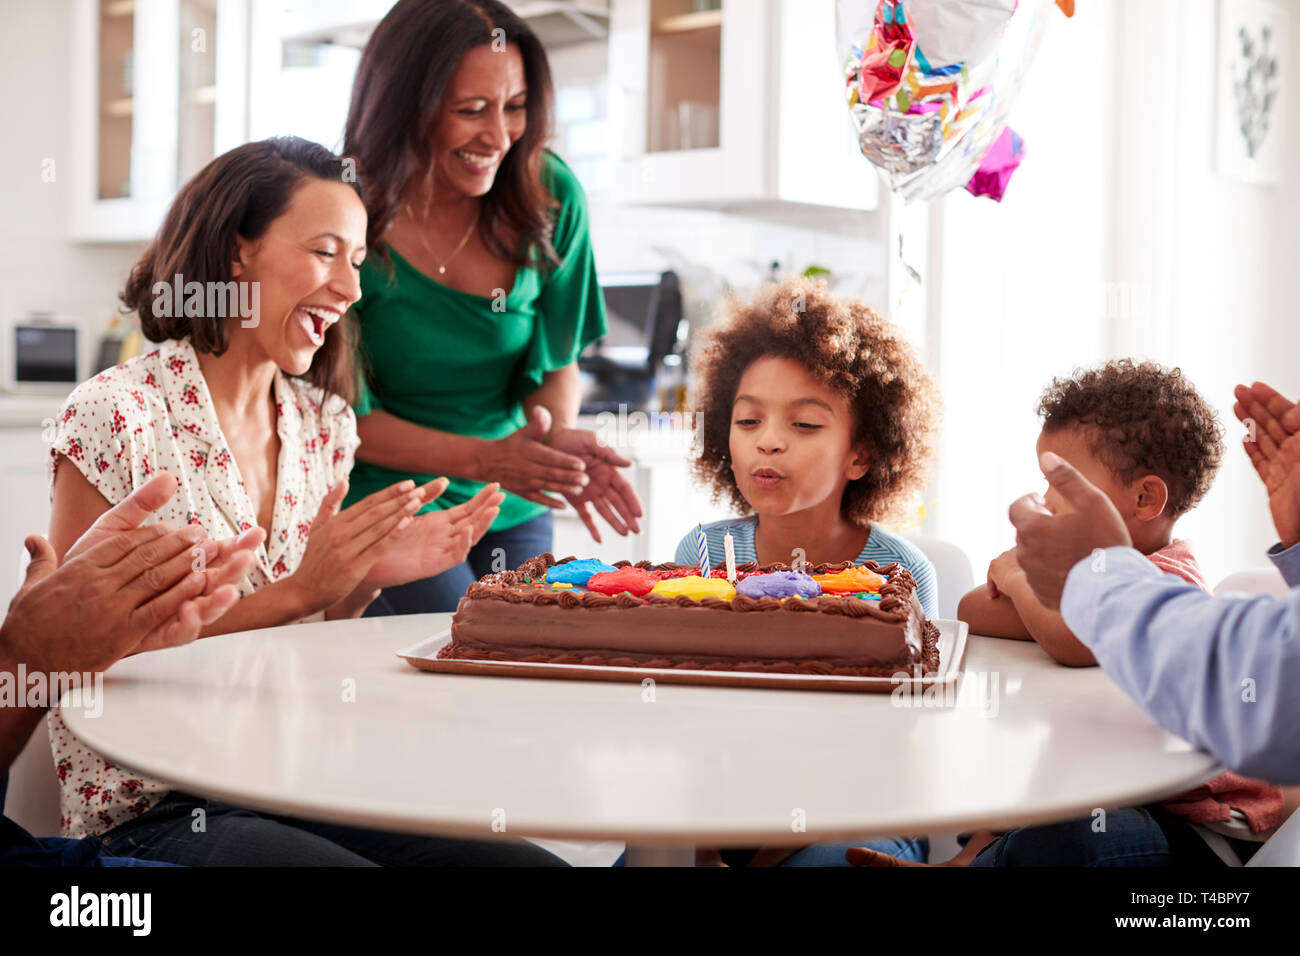 Pre-teen girl soffiando fuori le candeline sulla torta di compleanno seduti al tavolo in cucina con i suoi tre generazioni la famiglia, il fuoco selettivo Foto Stock